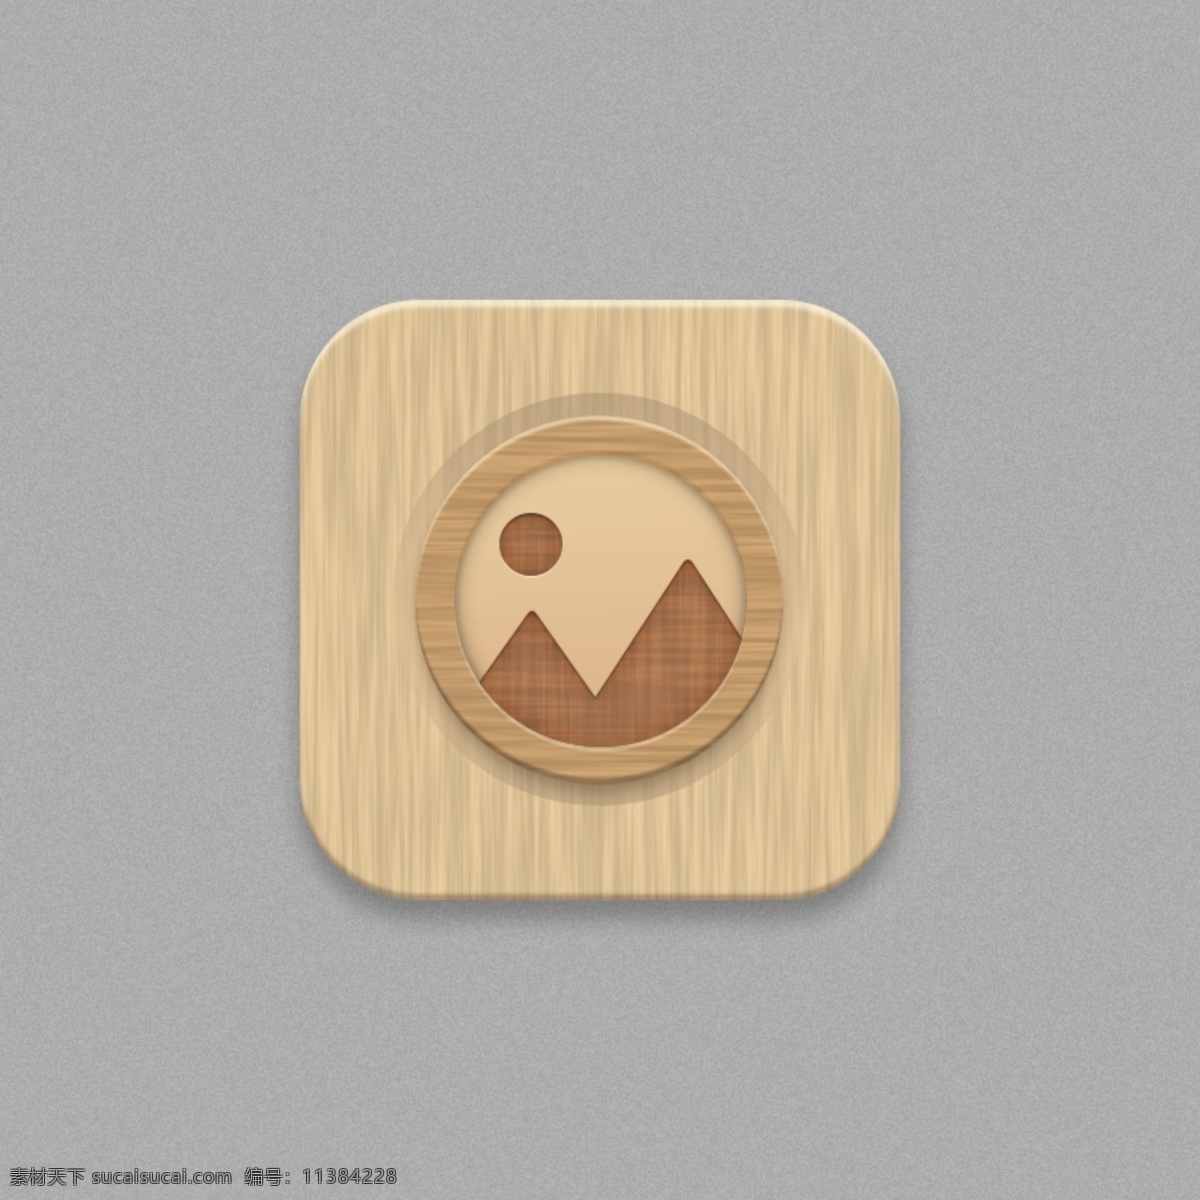 相册 图标 手机 主题 木纹 app 手机图标 手主题 icon